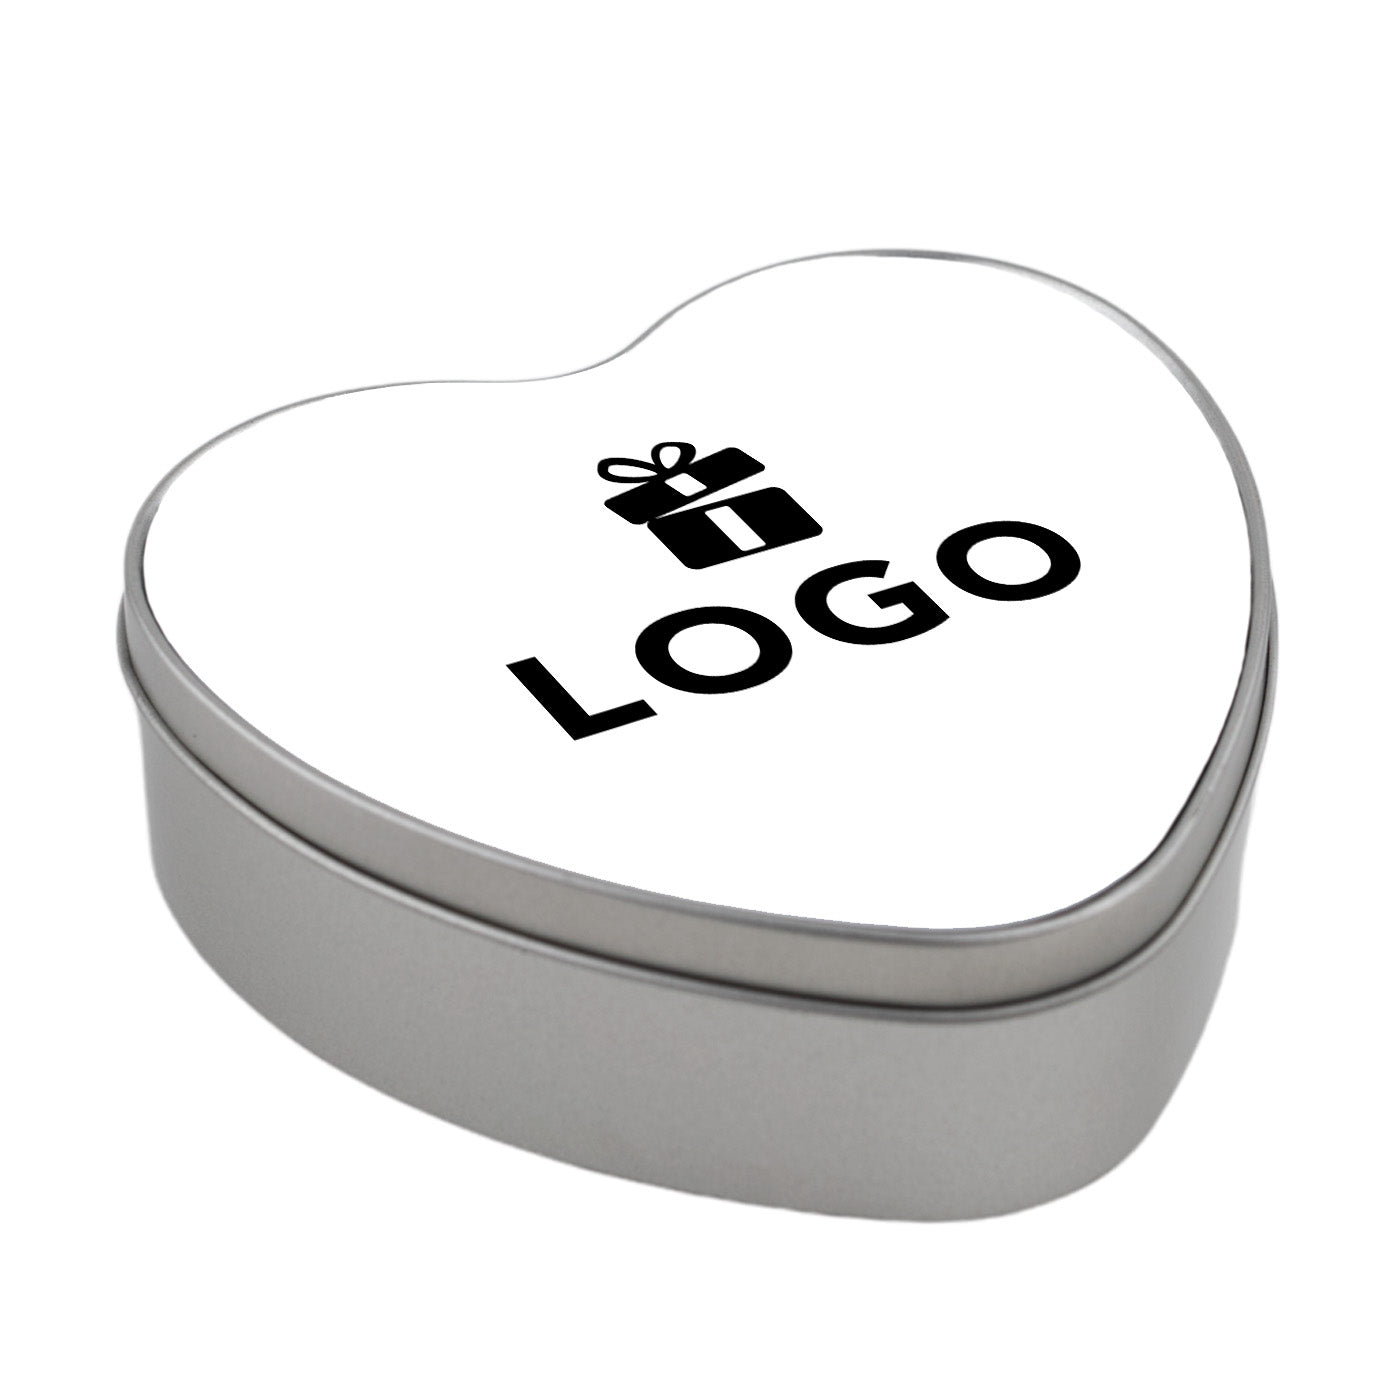 Hartvormige koektrommel bedrukken met logo